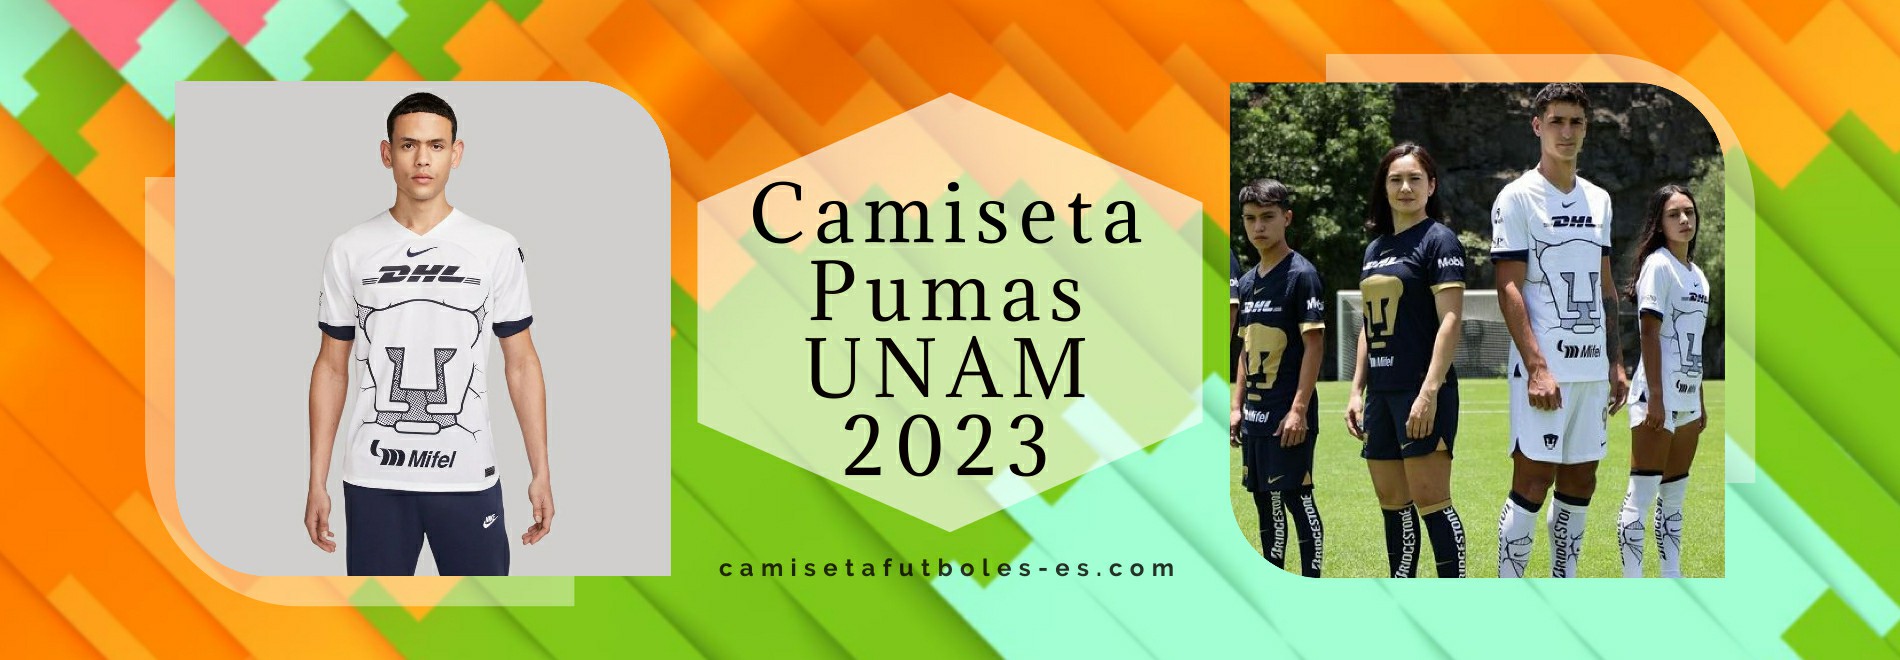 Camiseta Pumas UNAM 2023-2024